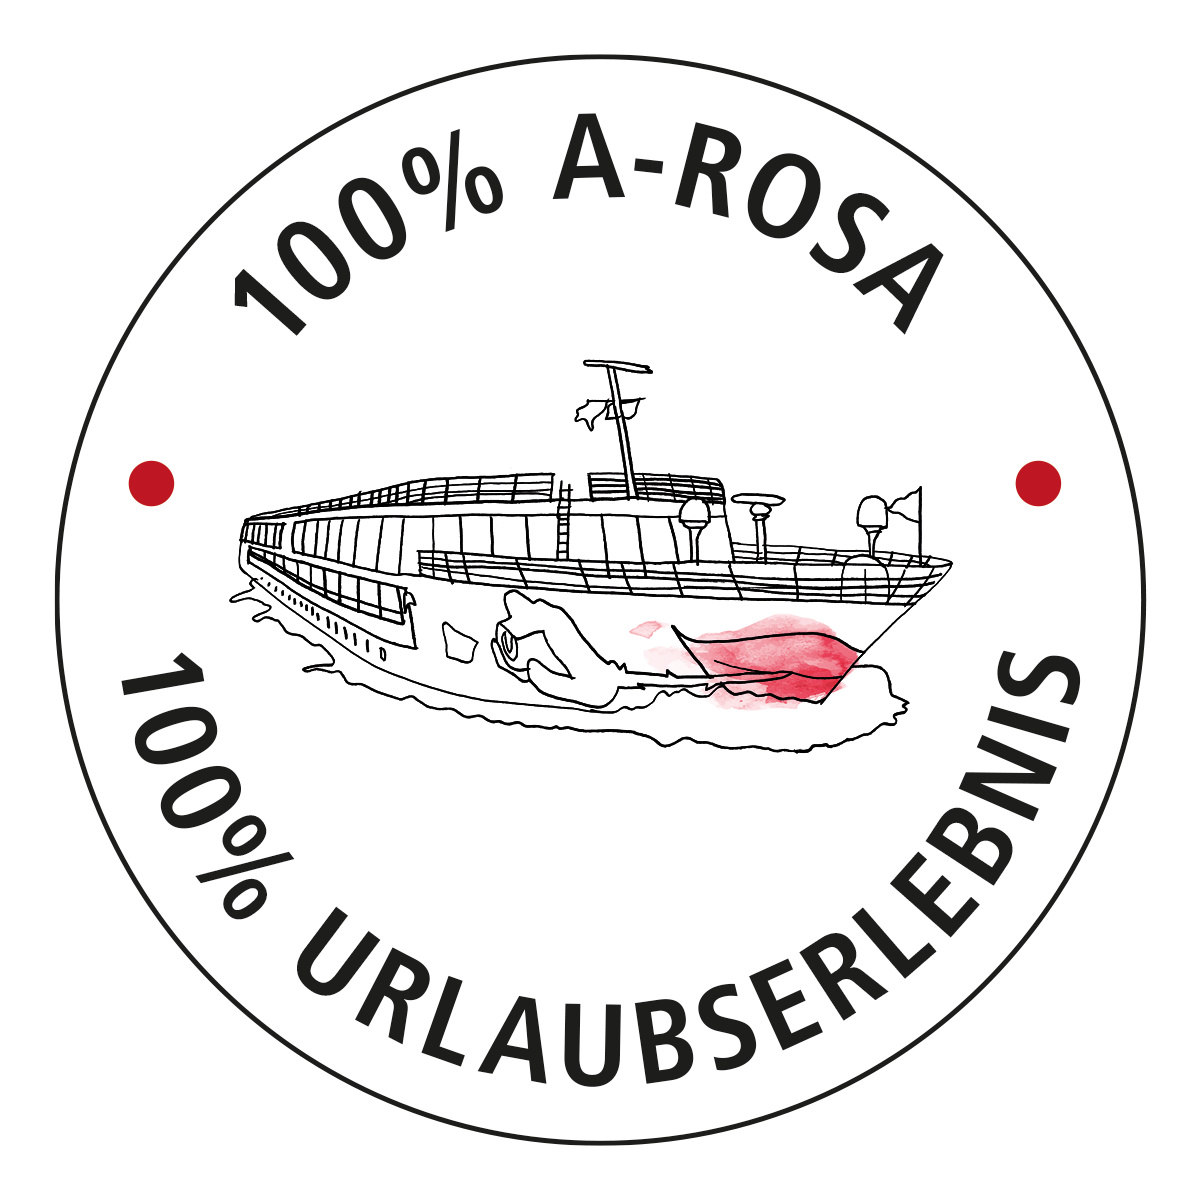 100% A-ROSA